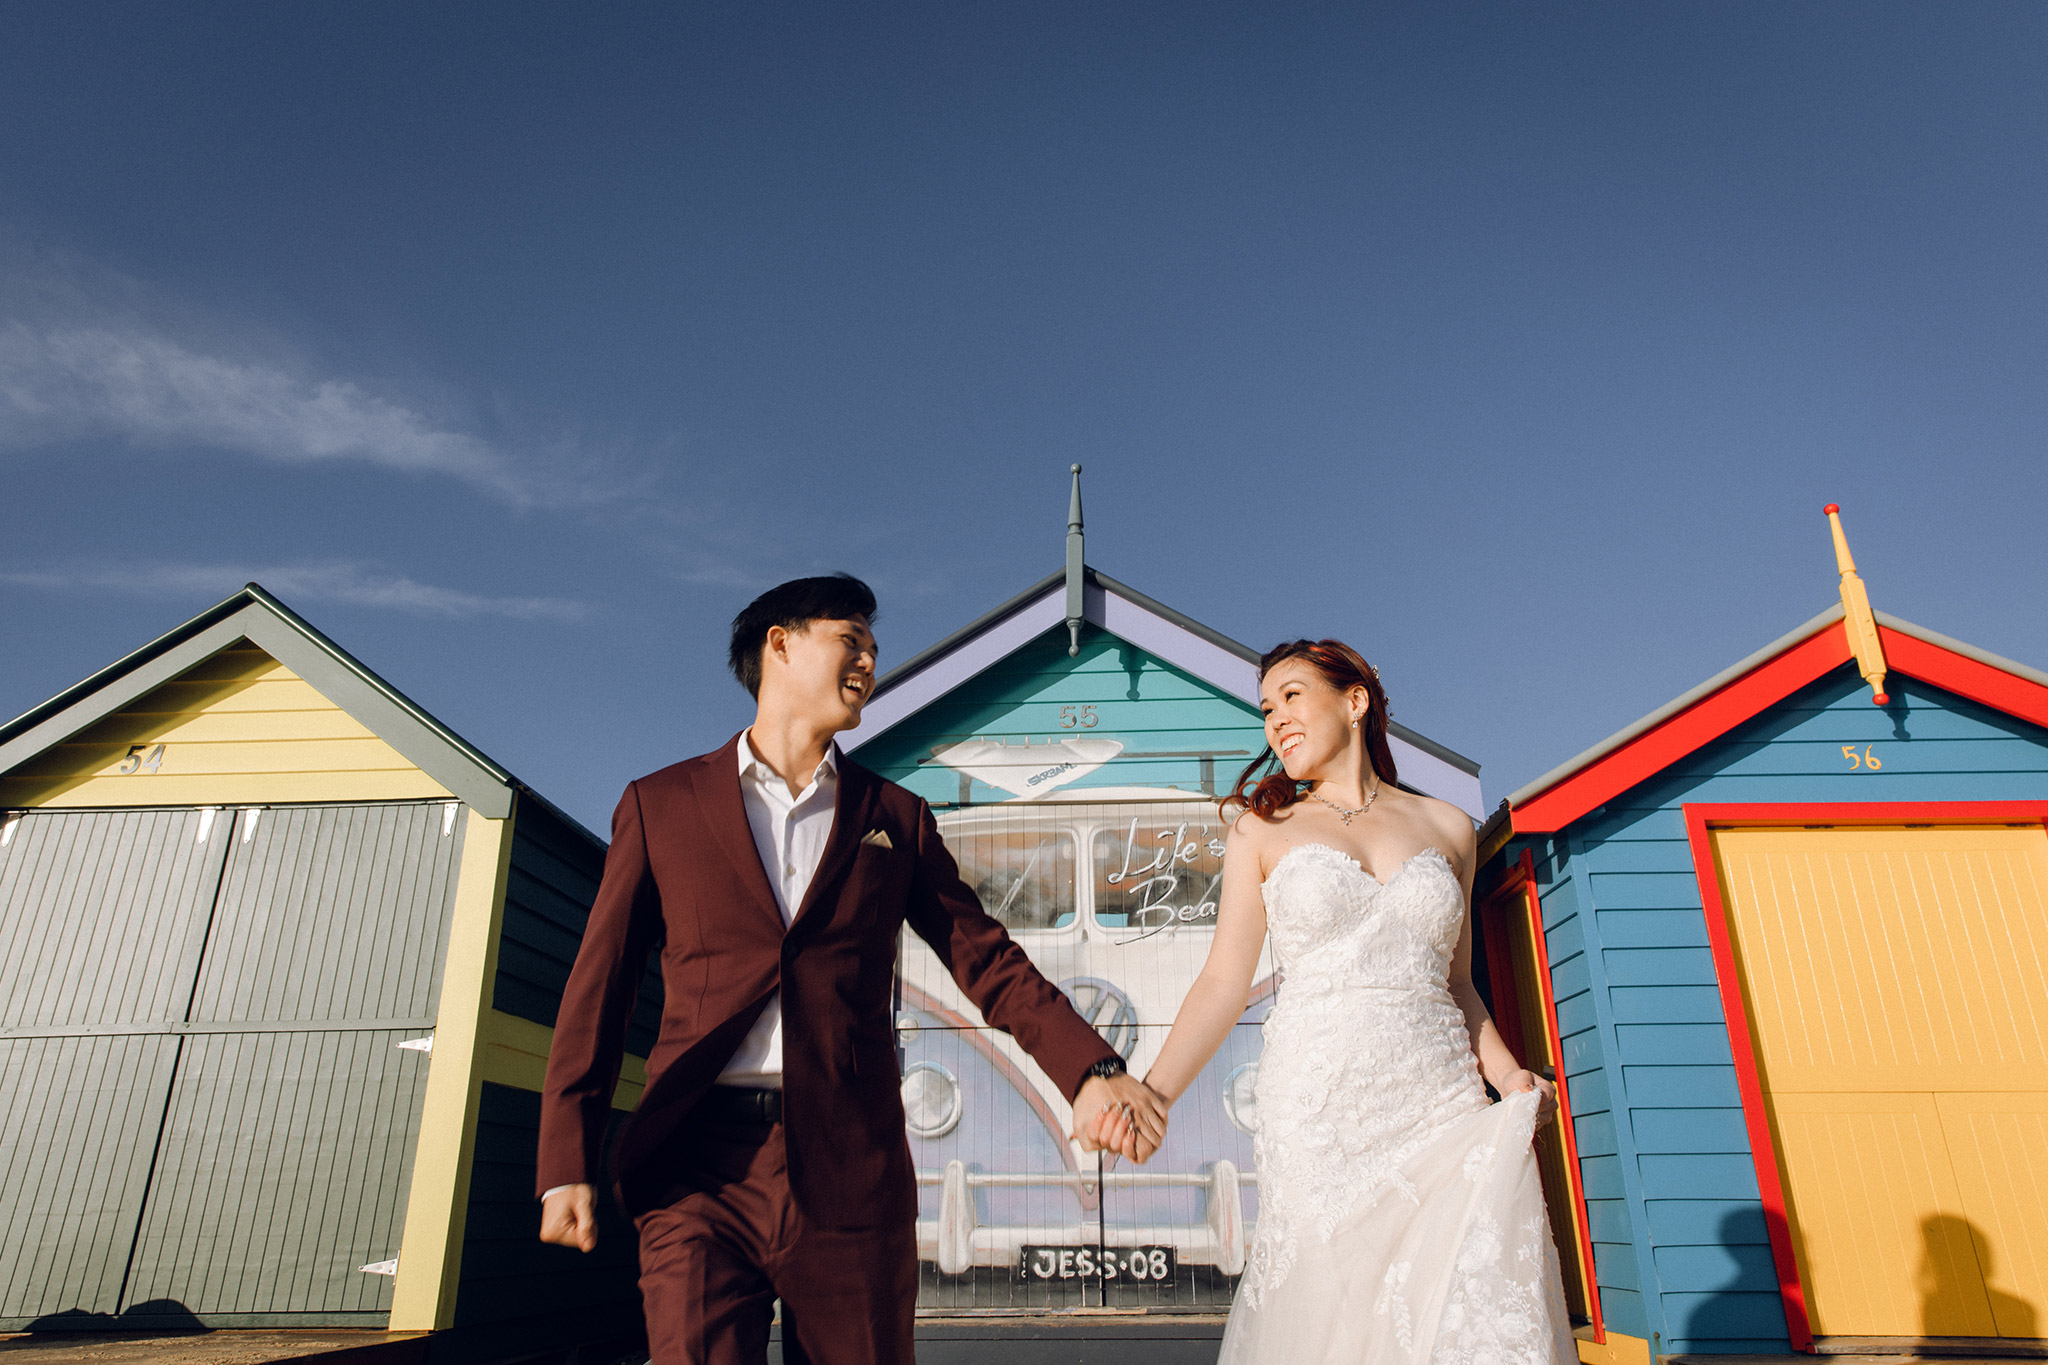 Melbourne Pre-Wedding Photoshoot at Alpaca Farm, Fitzroy Gardens & Brighton Beach by Freddie on OneThreeOneFour 23